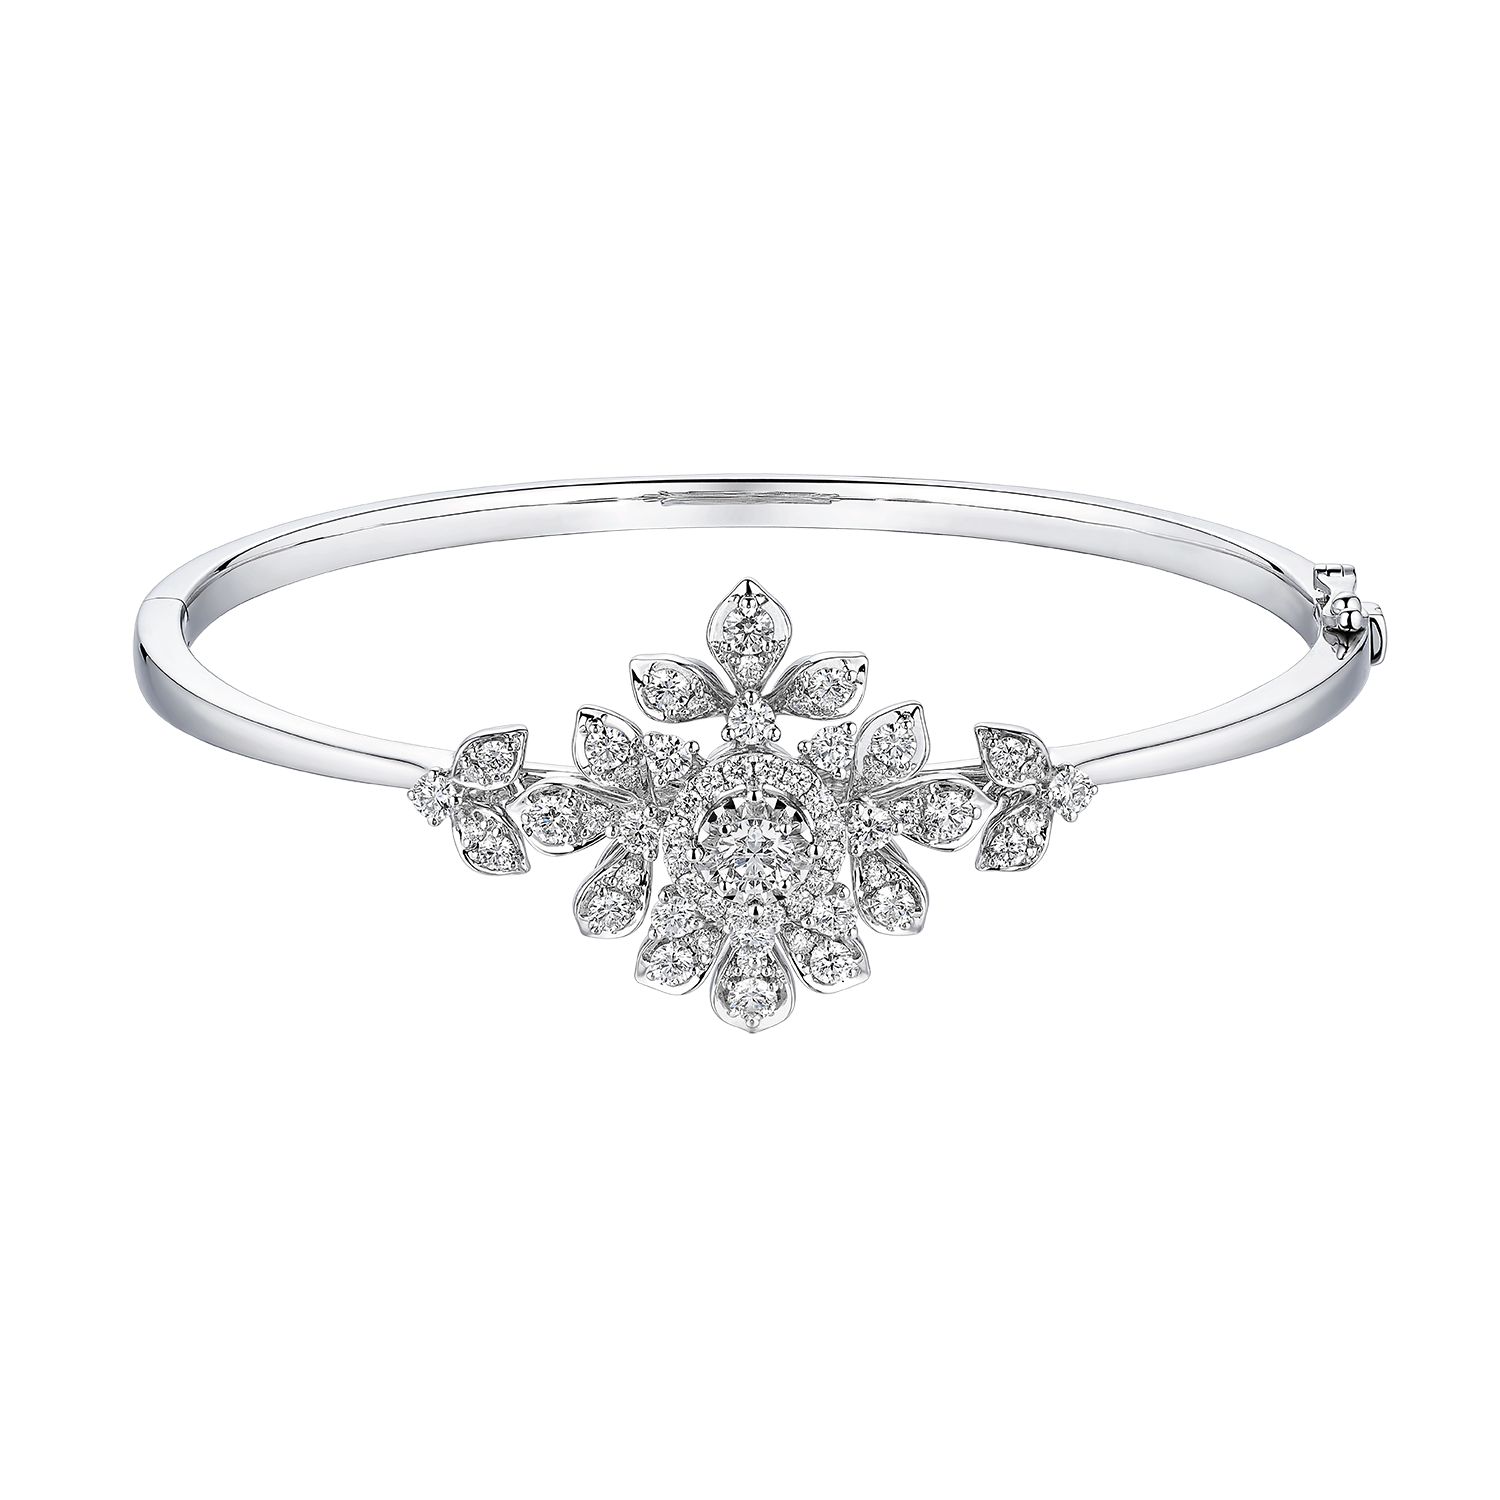 Wedding Collection " Enchanted Blossom " 18K Gold Diamond Bangle